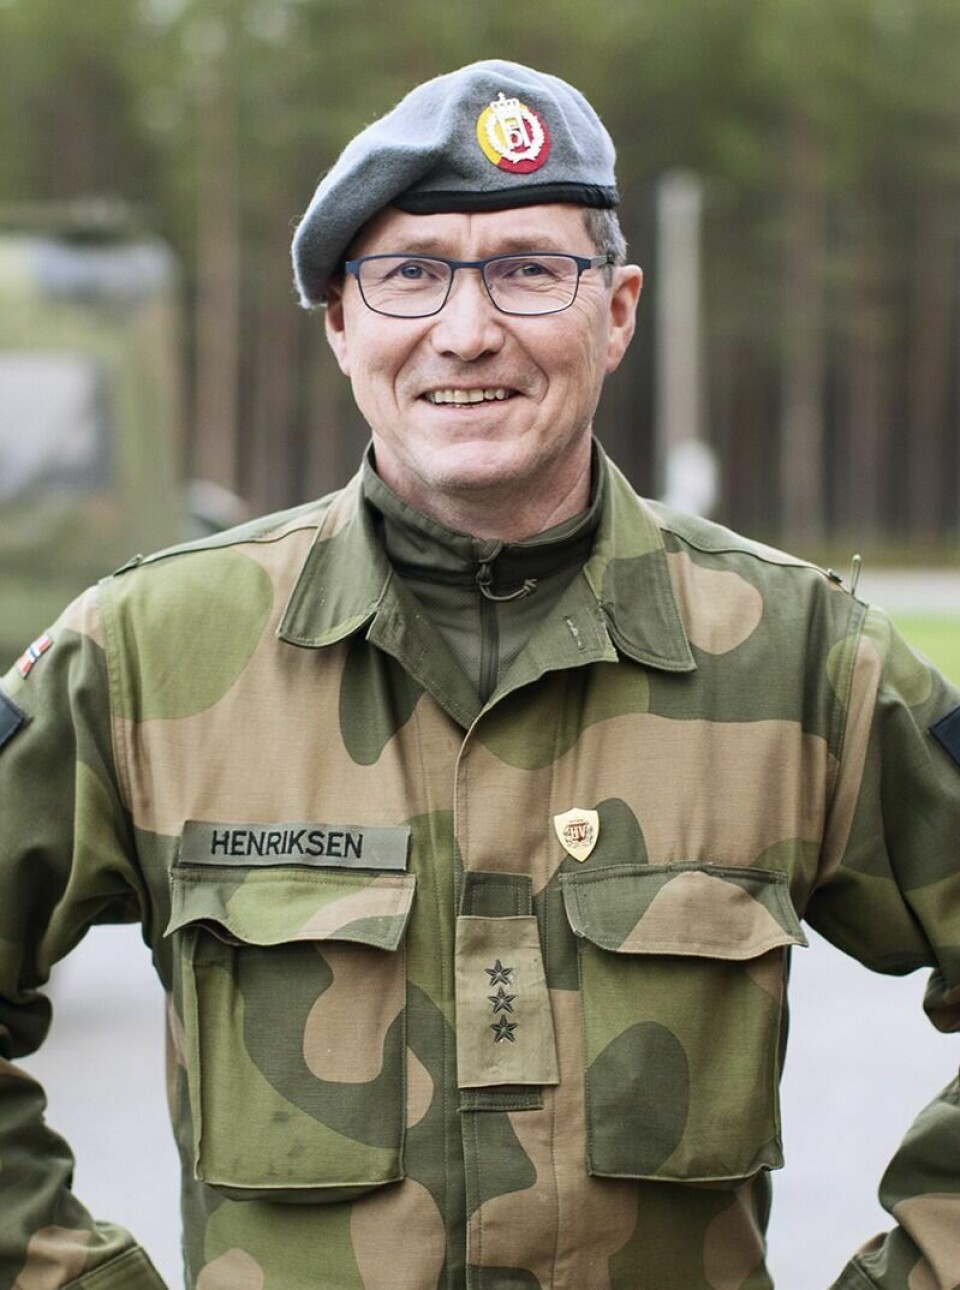 FORNØYD: Kaptein Sigbjørn Henriksen er fornøyd med at Målselv og Balsfjord HV- område også har byttet ut AG3-en med HK416. Foto: Hans Kristian Bergan/Forsvaret